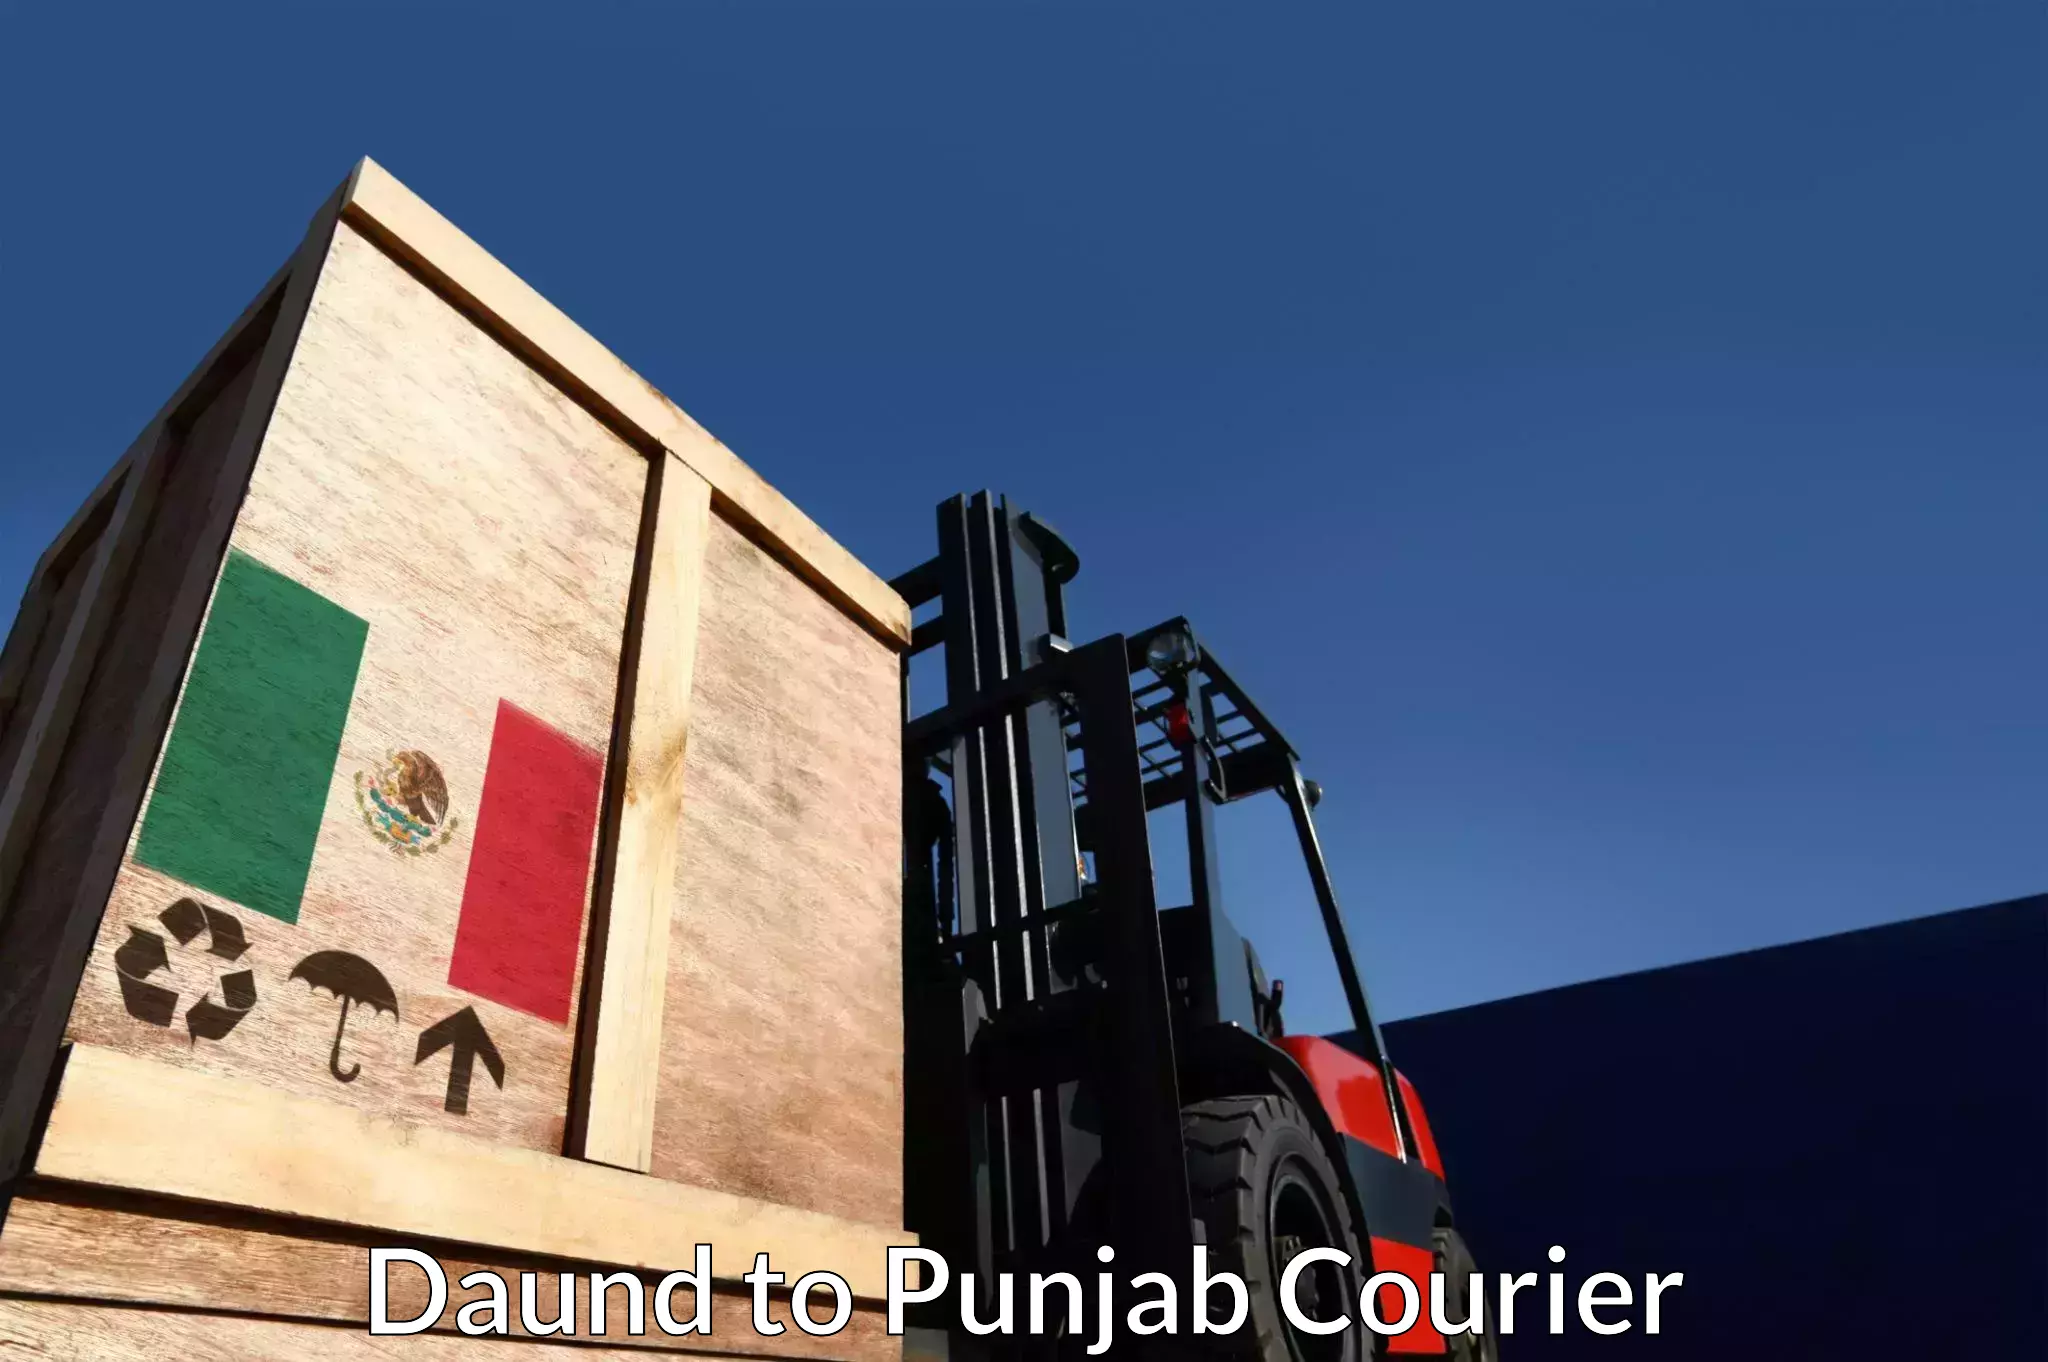 Customer-centric shipping Daund to Abohar